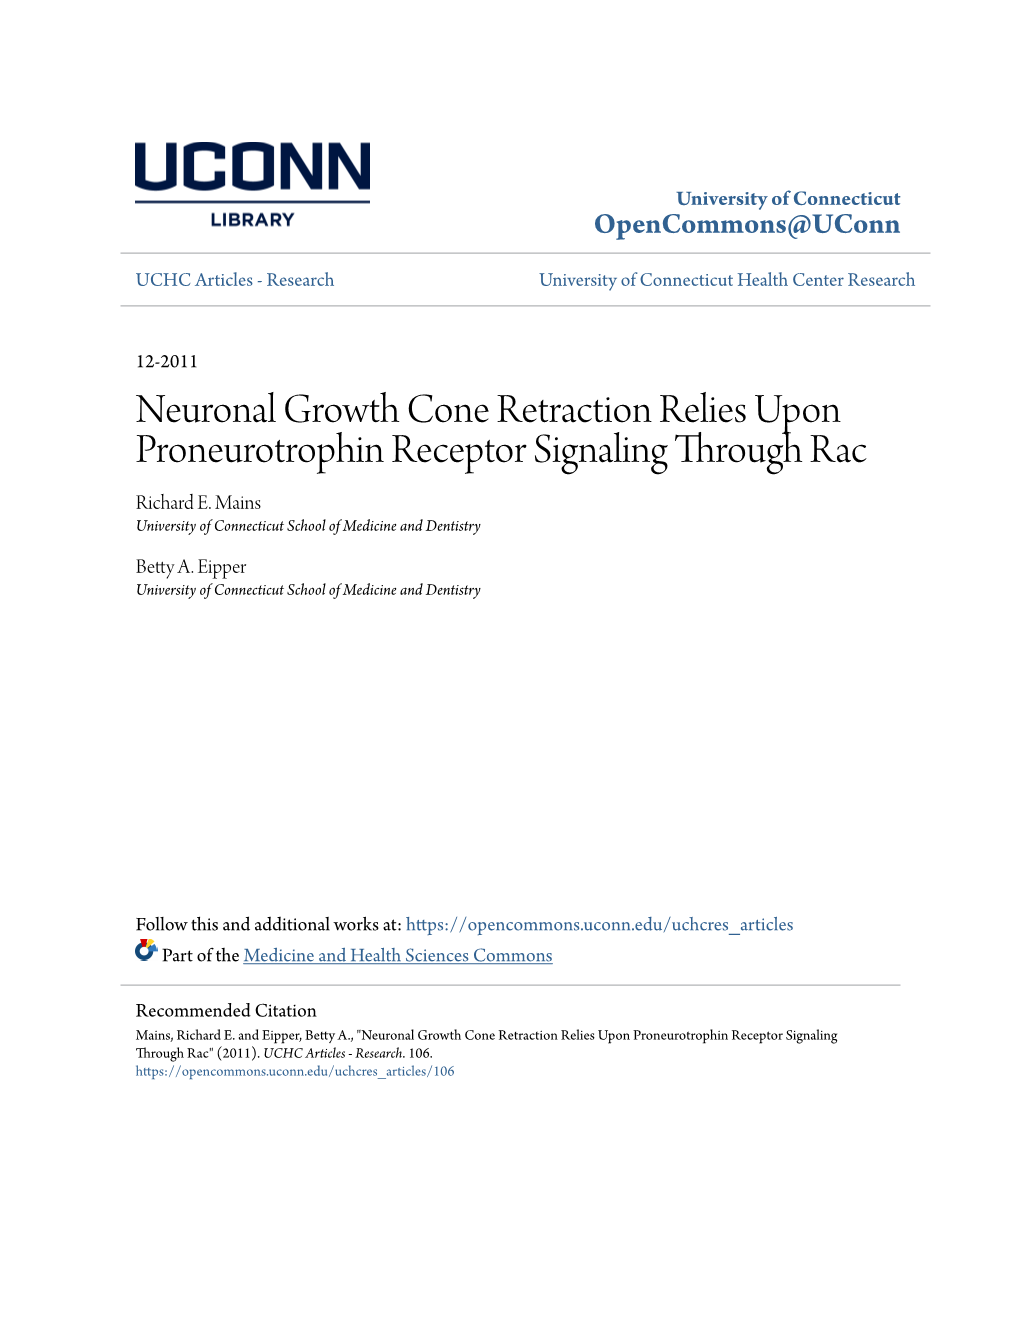 Neuronal Growth Cone Retraction Relies Upon Proneurotrophin Receptor Signaling Through Rac Richard E